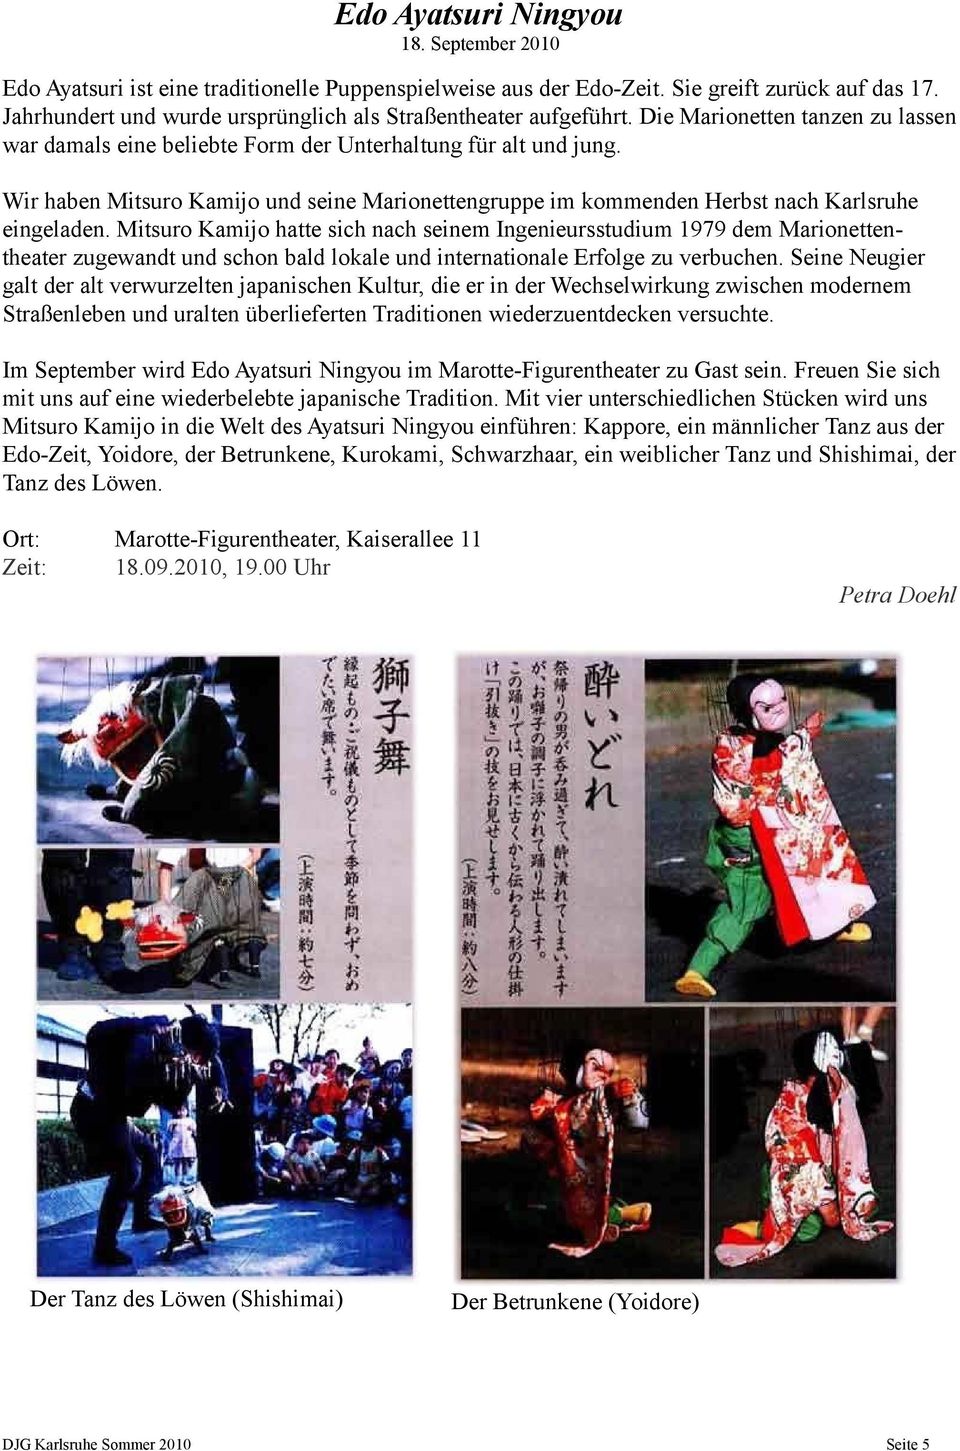 Wir haben Mitsuro Kamijo und seine Marionettengruppe im kommenden Herbst nach Karlsruhe eingeladen.